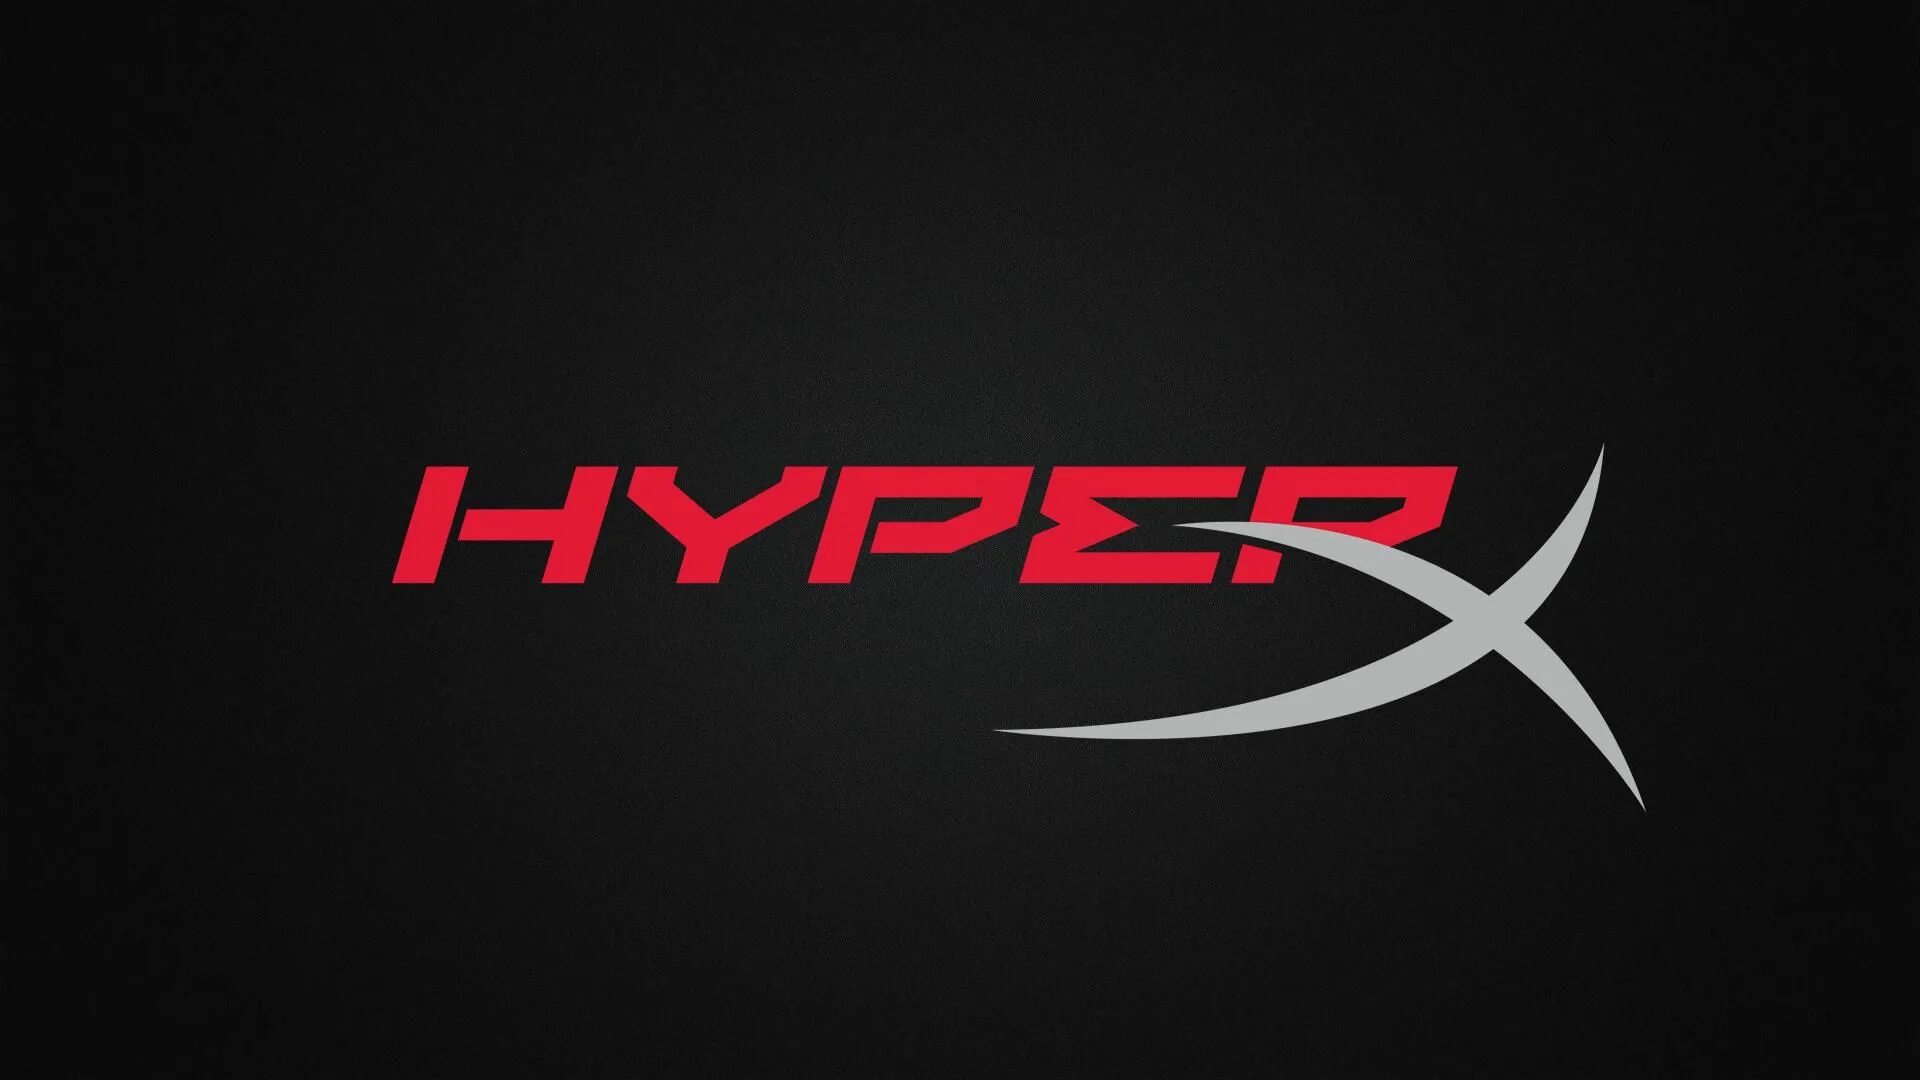 Hyperx. HYPERX эмблема. HYPERX надпись. Наклейка HYPERX. HYPERX картинки.